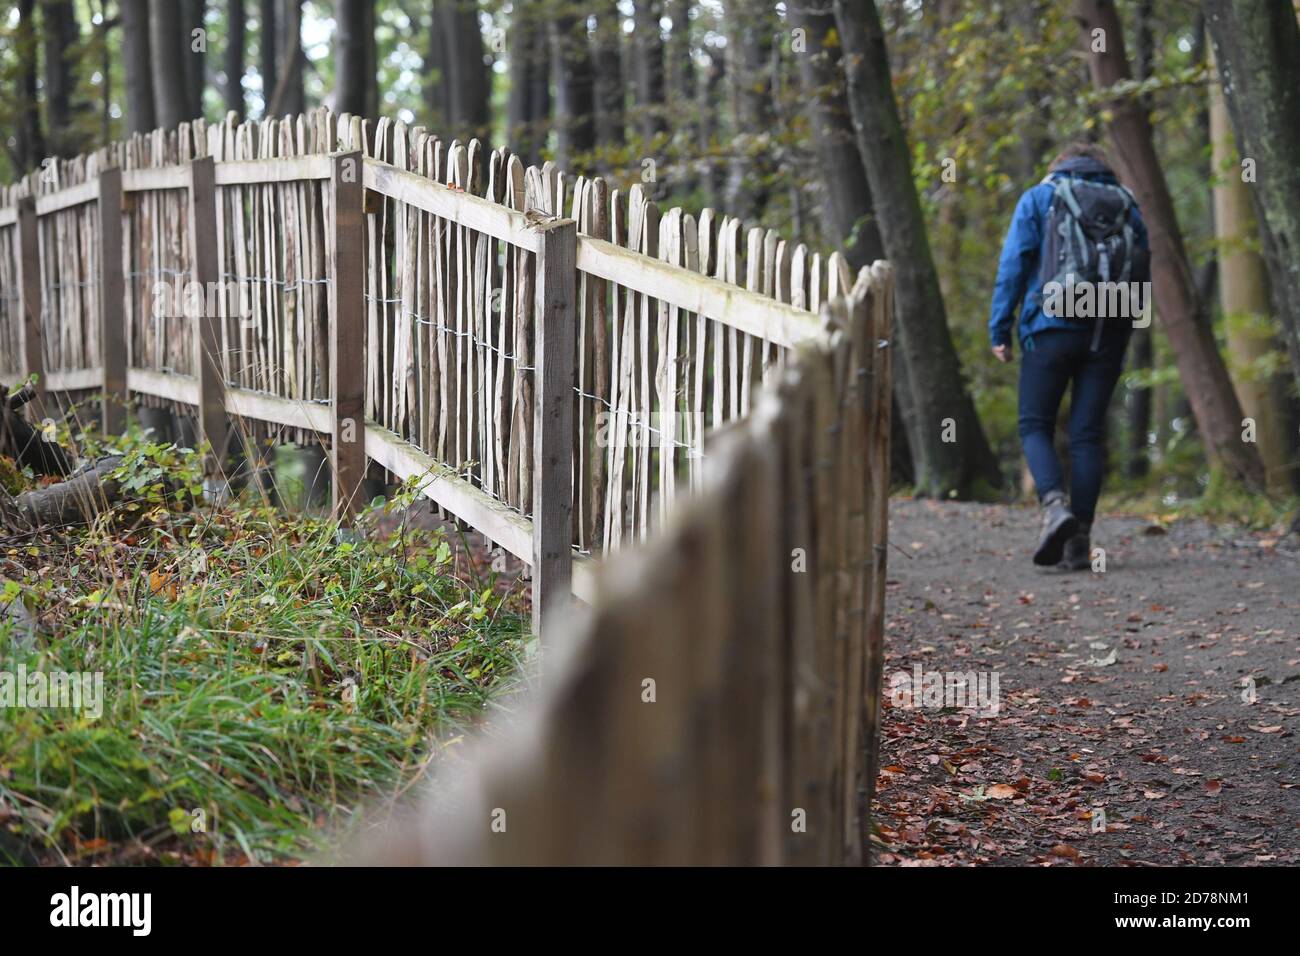 Sassnitz, Germania. 21 Ott 2020. I turisti camminano lungo il sentiero escursionistico (Hochuferweg) lungo la costa calcarea dell'isola del Mar Baltico di Rügen, nel Parco Nazionale di Jasmund vicino a Sassnitz. Presso il National Park Centre Königsstuhl a Rügen sono stati aperti i sentieri avventurosi 'Forest' e 'Chalk' (percorso in alta costa) nello stesso giorno. Secondo il ministero, i costi erano di poco meno di 100,000 euro. Il Jasmund National Park, il più piccolo parco nazionale della Germania, ha la più alta densità di visitatori per ettaro con più di un milione di visitatori all'anno. Credit: Stefan Sauer/dpa-Zentral/dpa/Alamy Live News Foto Stock